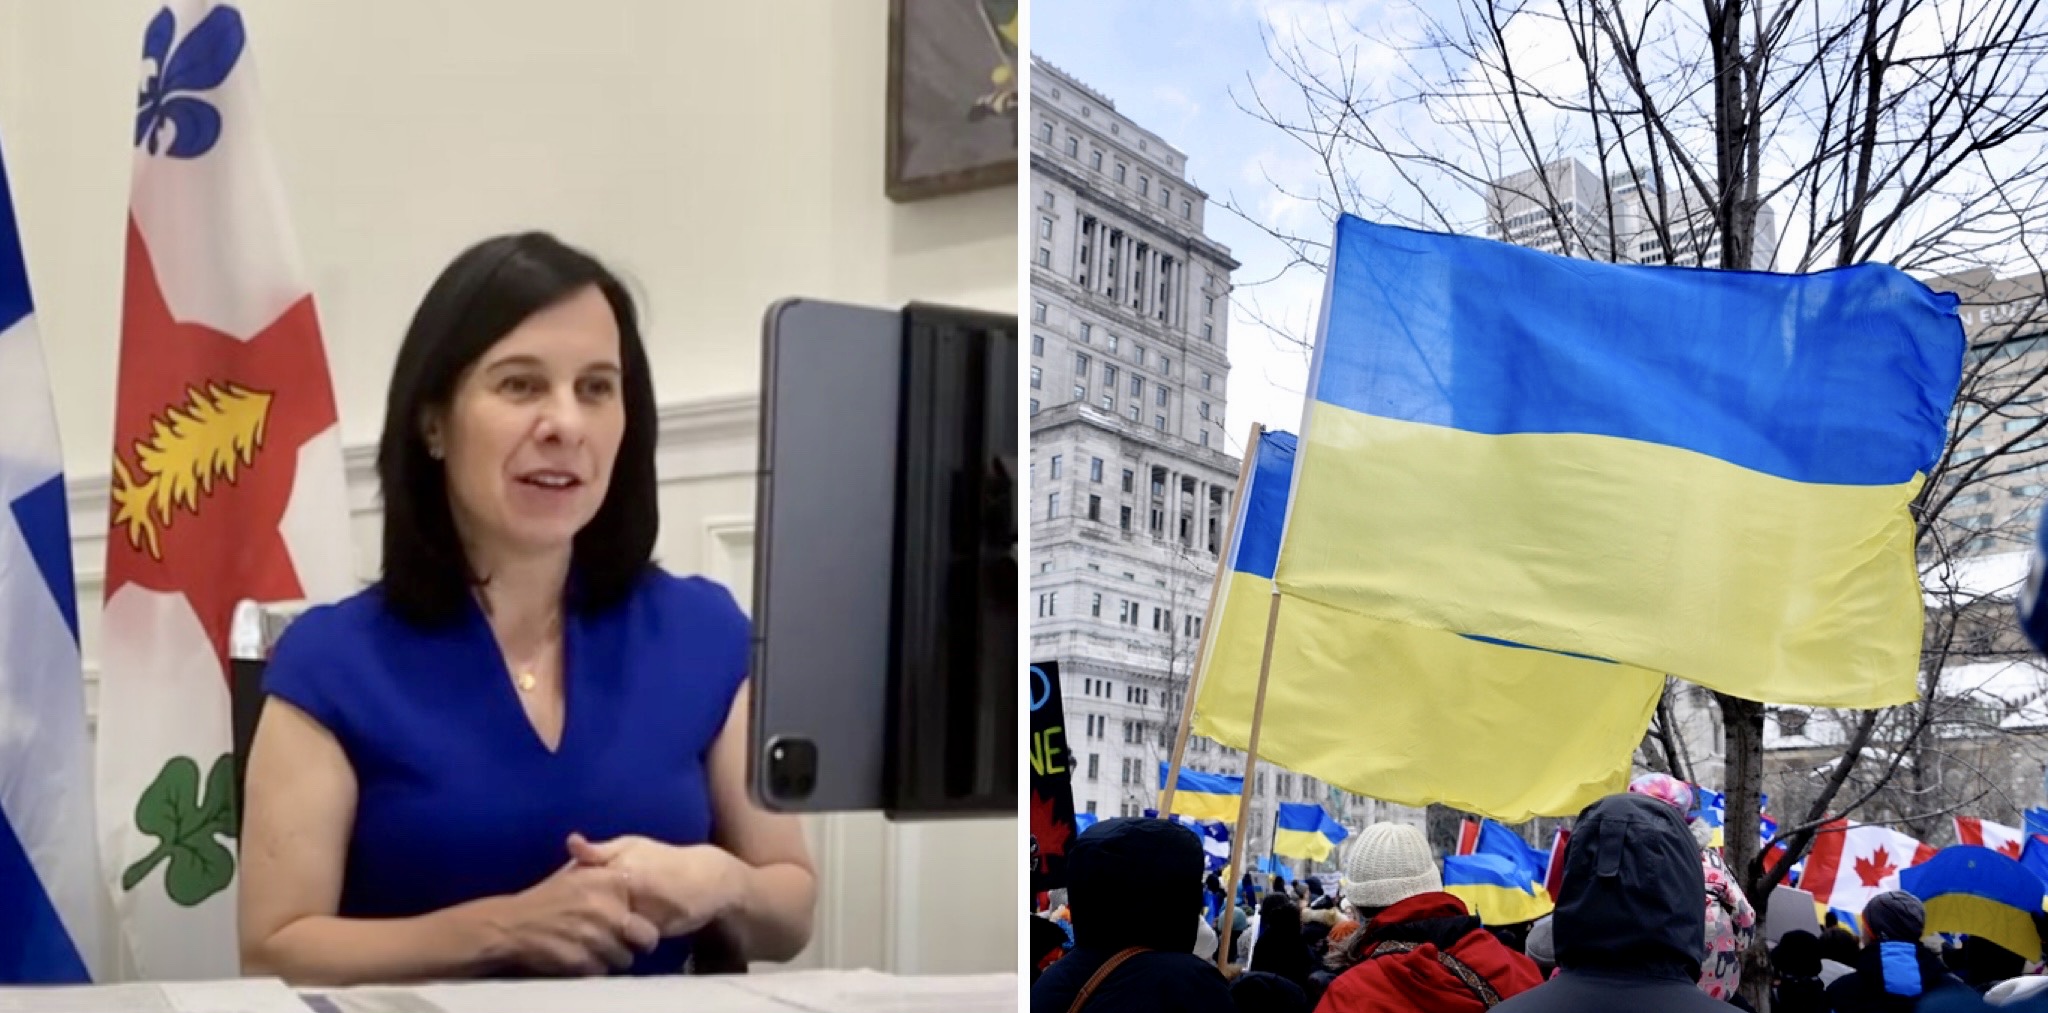 Valérie Plante Montreal Ukraine Ukrainian mayors